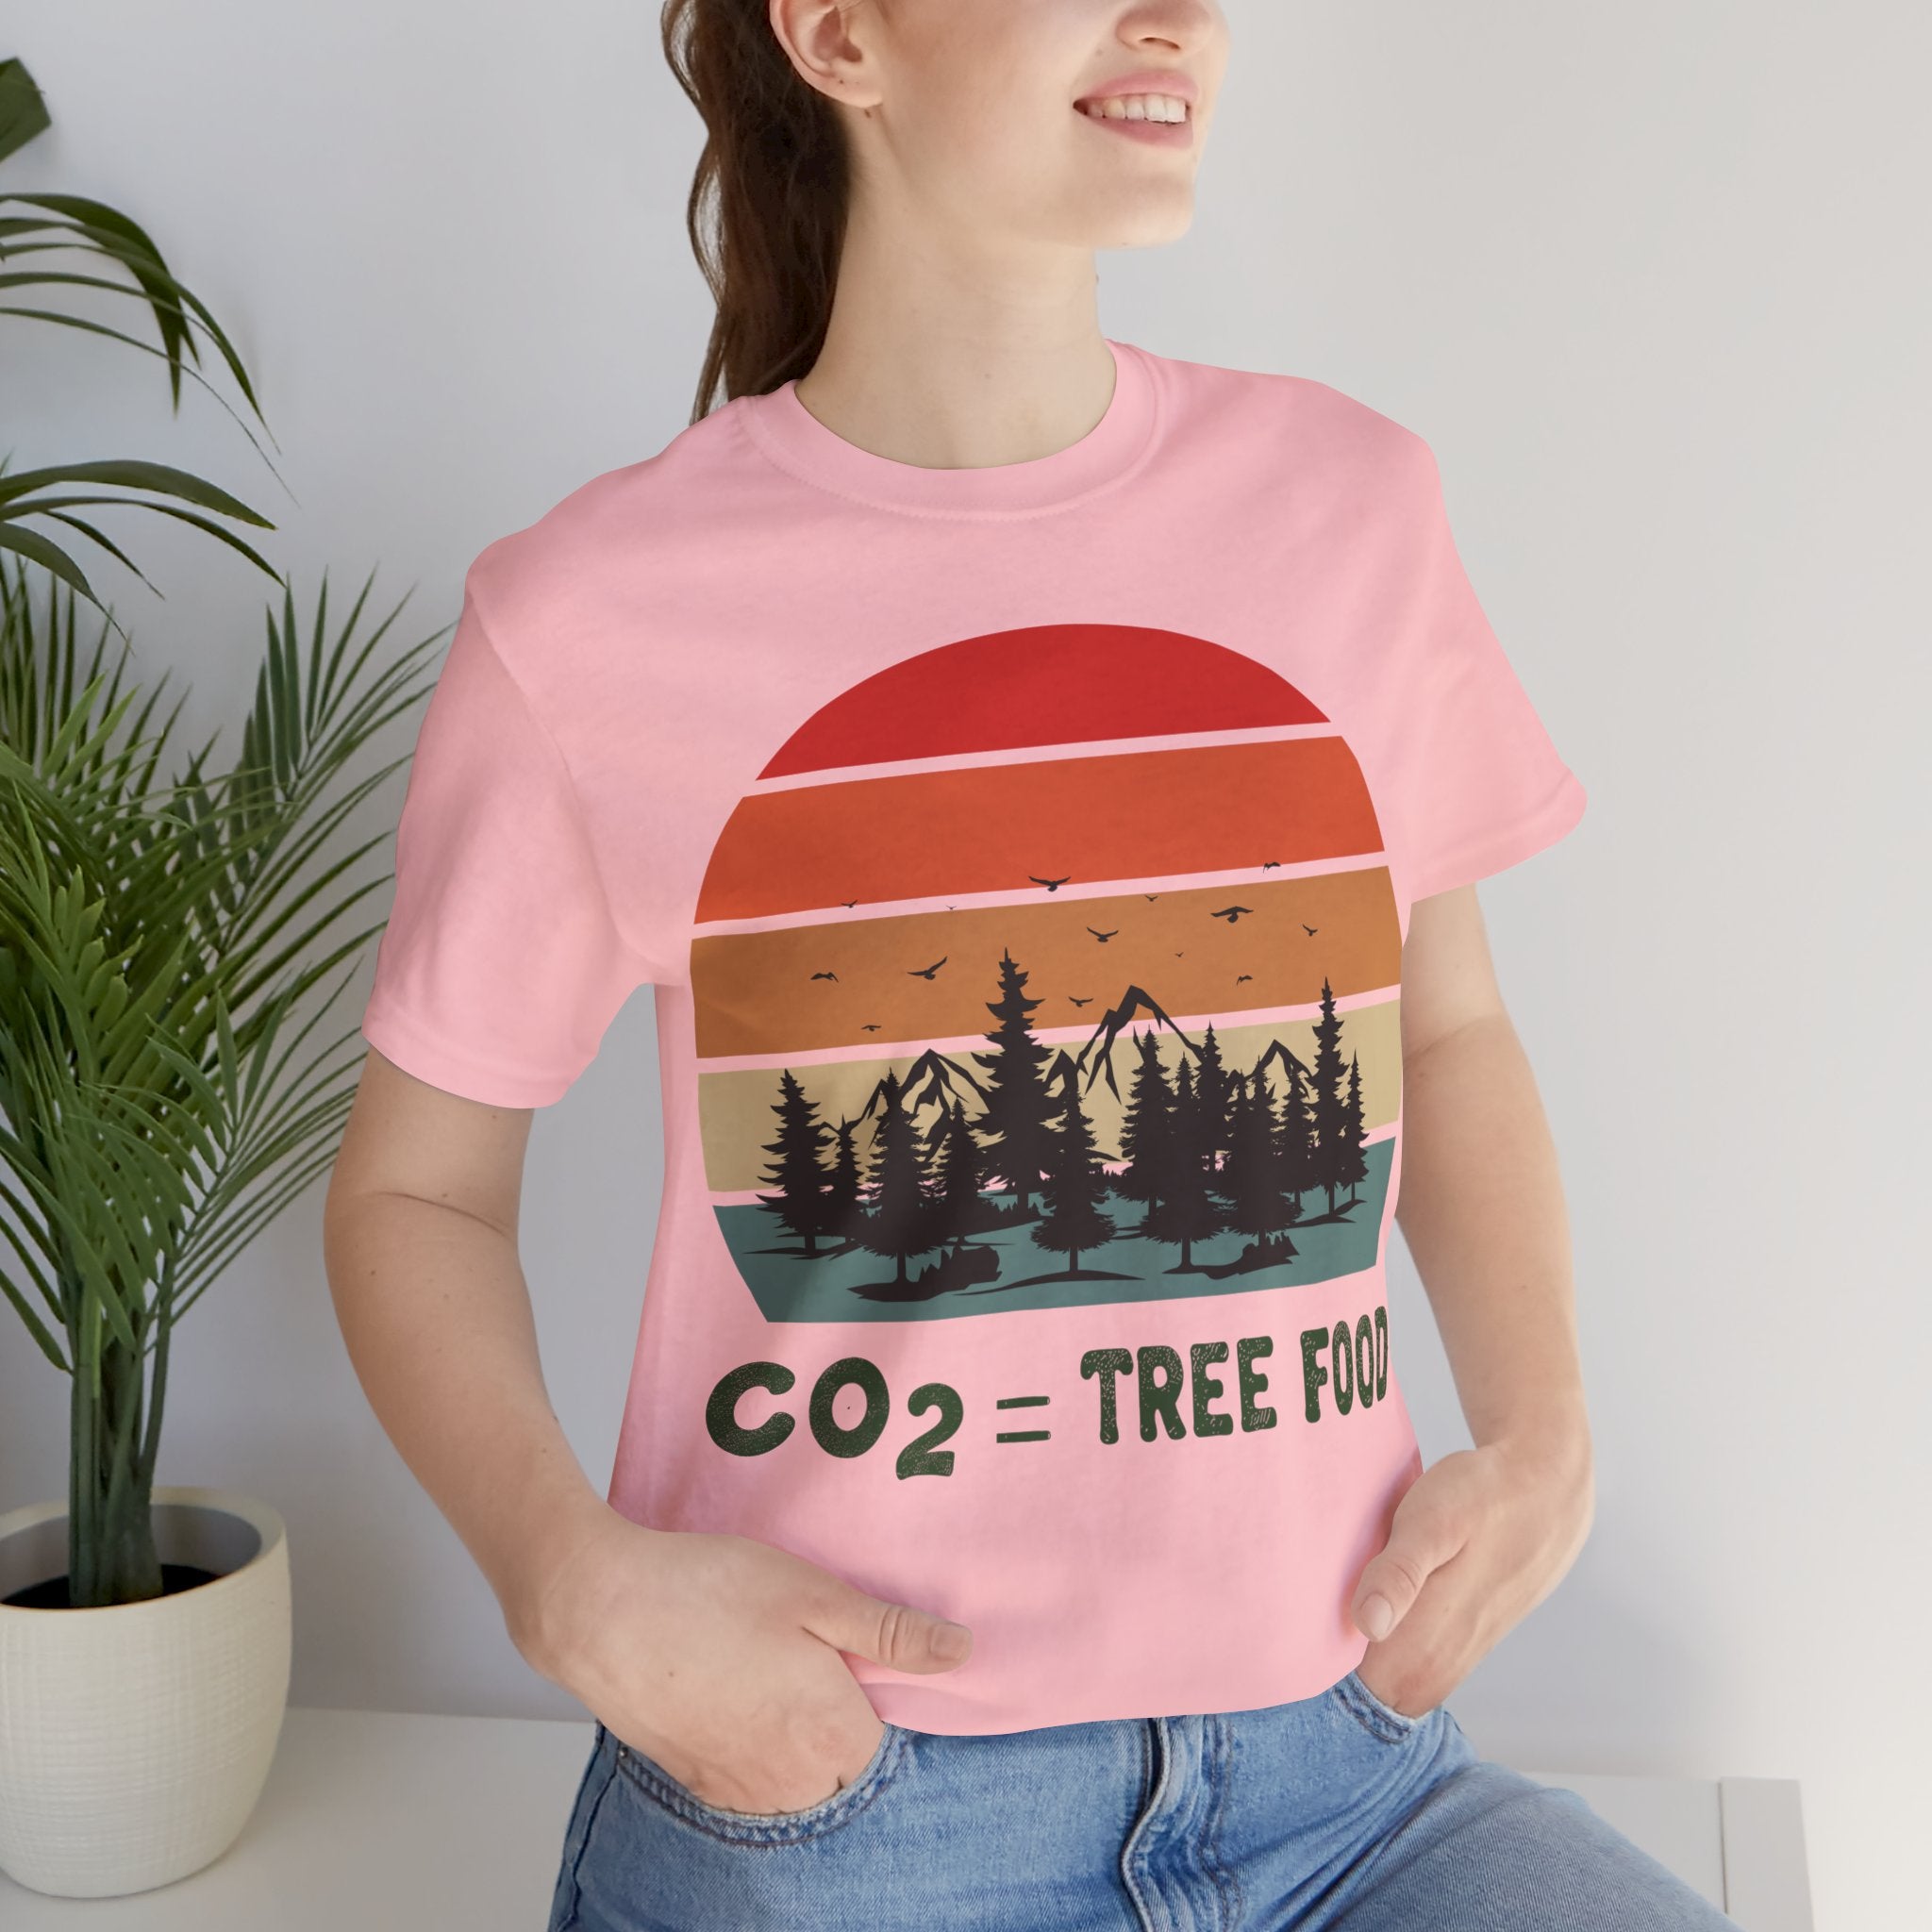 CO2 = Tree Food